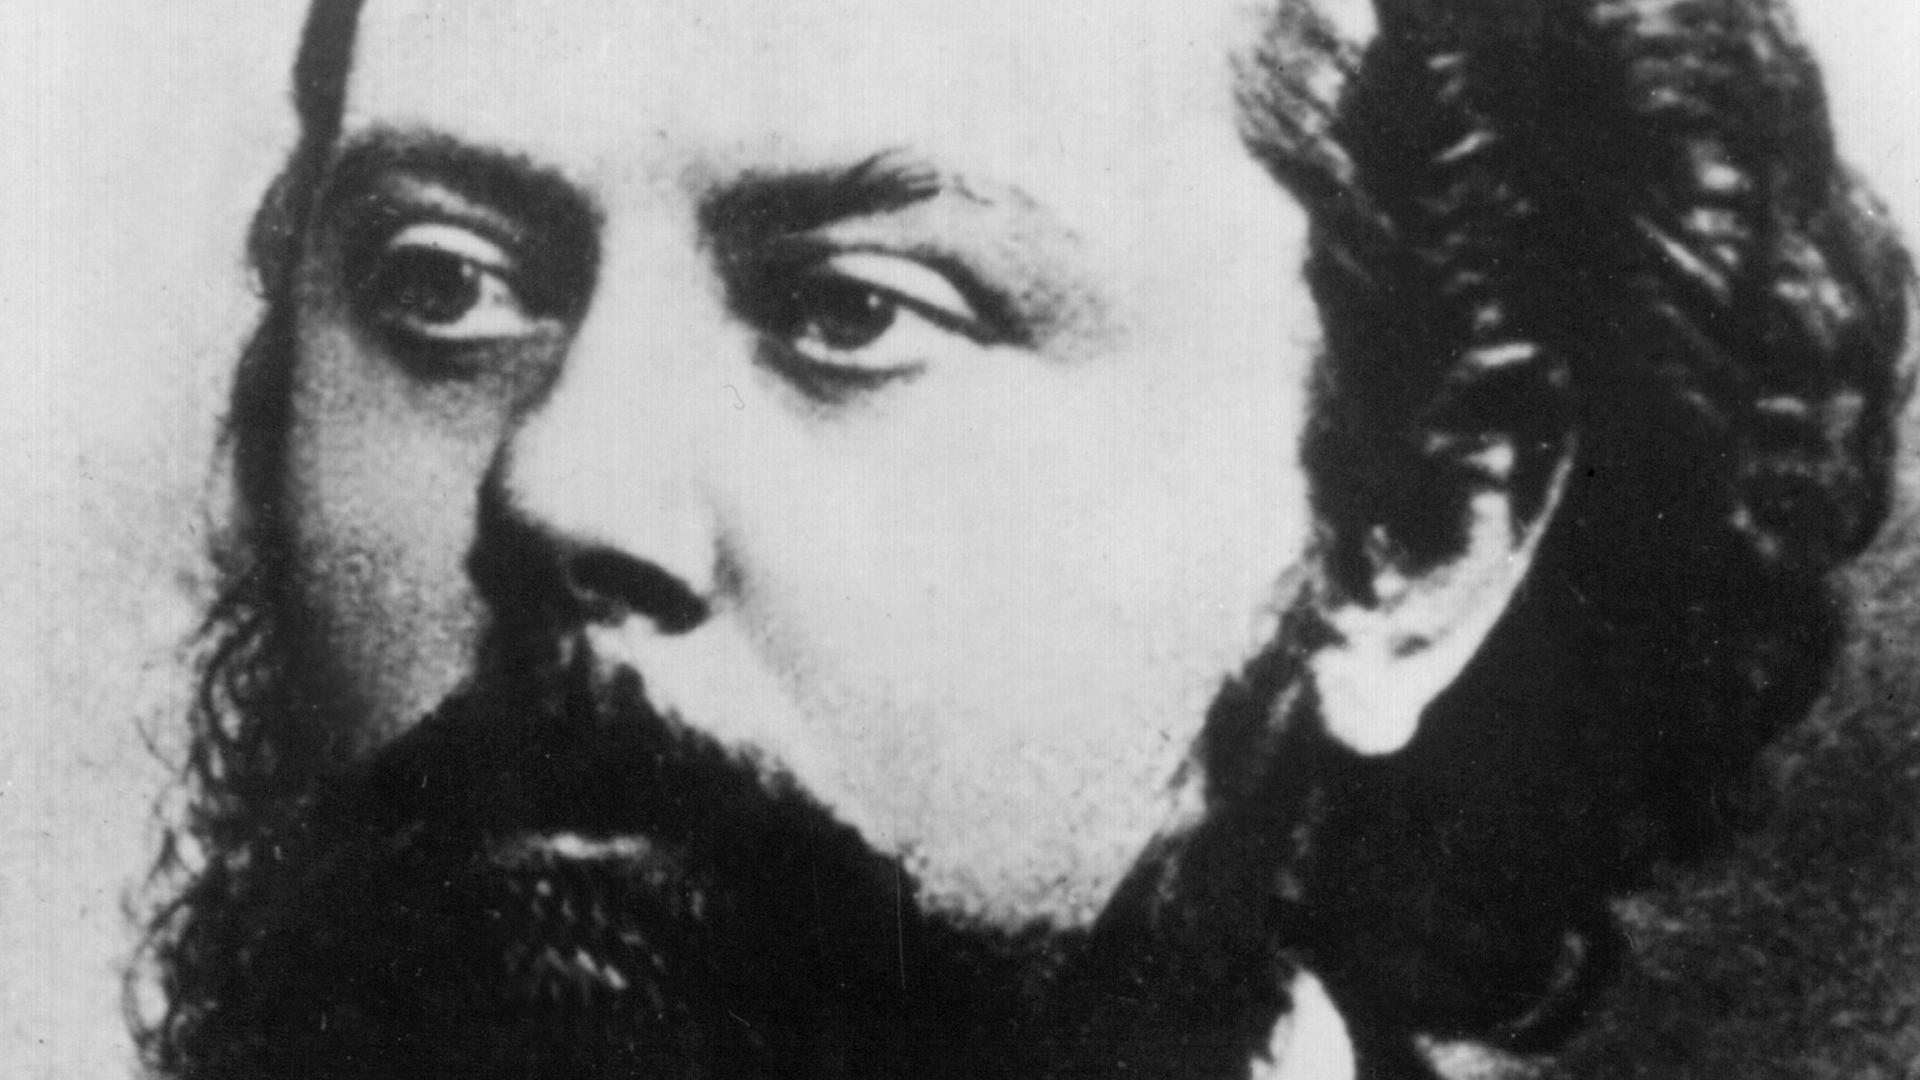 Der russische Komponist Modest Petrowitsch Mussorgski, 21. März 1839 in Karewo geboren, am 28. März 1881 in Petersburg verstorben, schwarz-weiß-Aufnahme